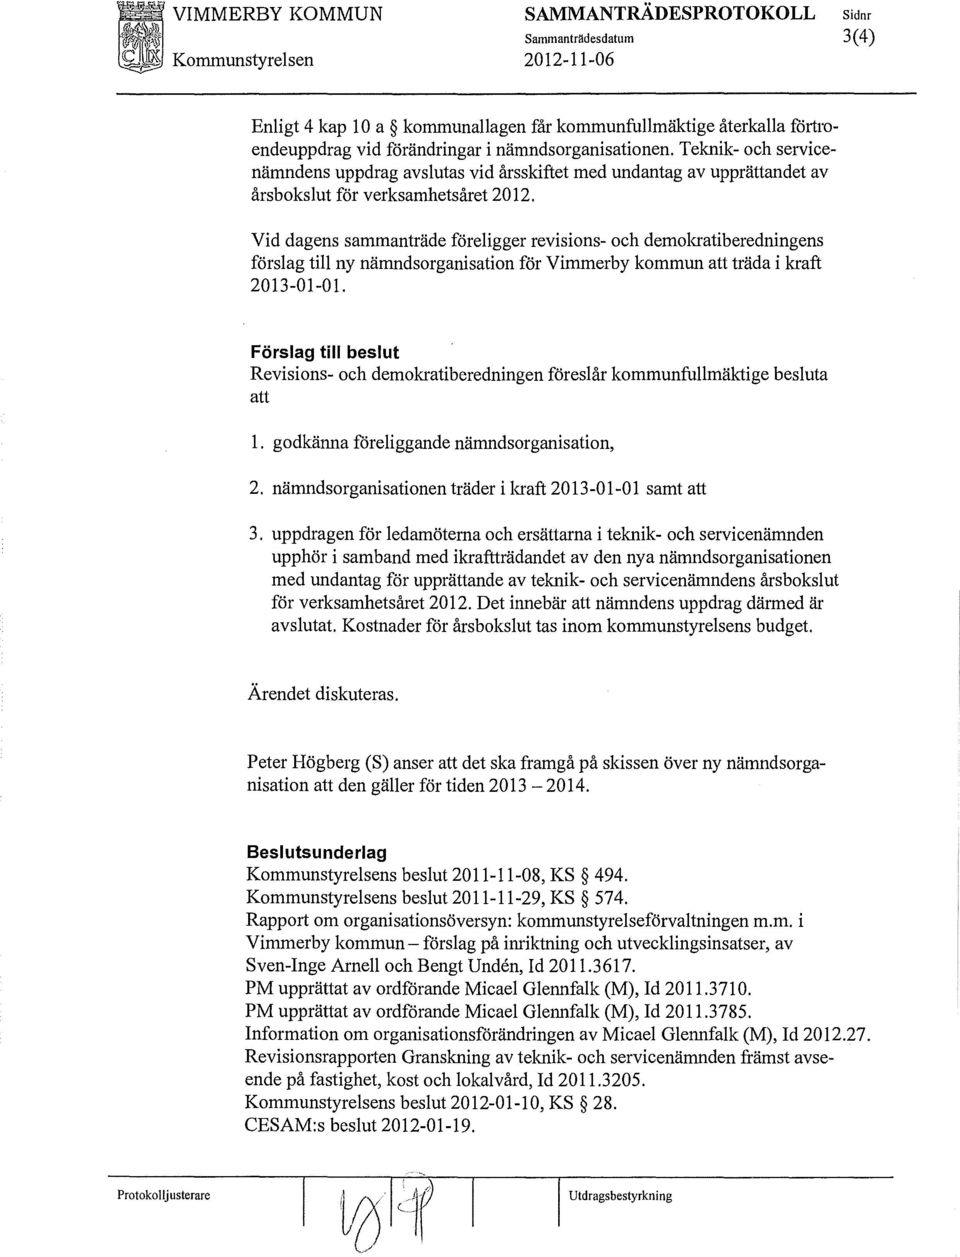 Vid dagens sammanträde föreligger revisions- och demokratiberedningens förslag till ny nämndsorganisation för Vimmerby kornmun att träda i kraft 2013-01-01.